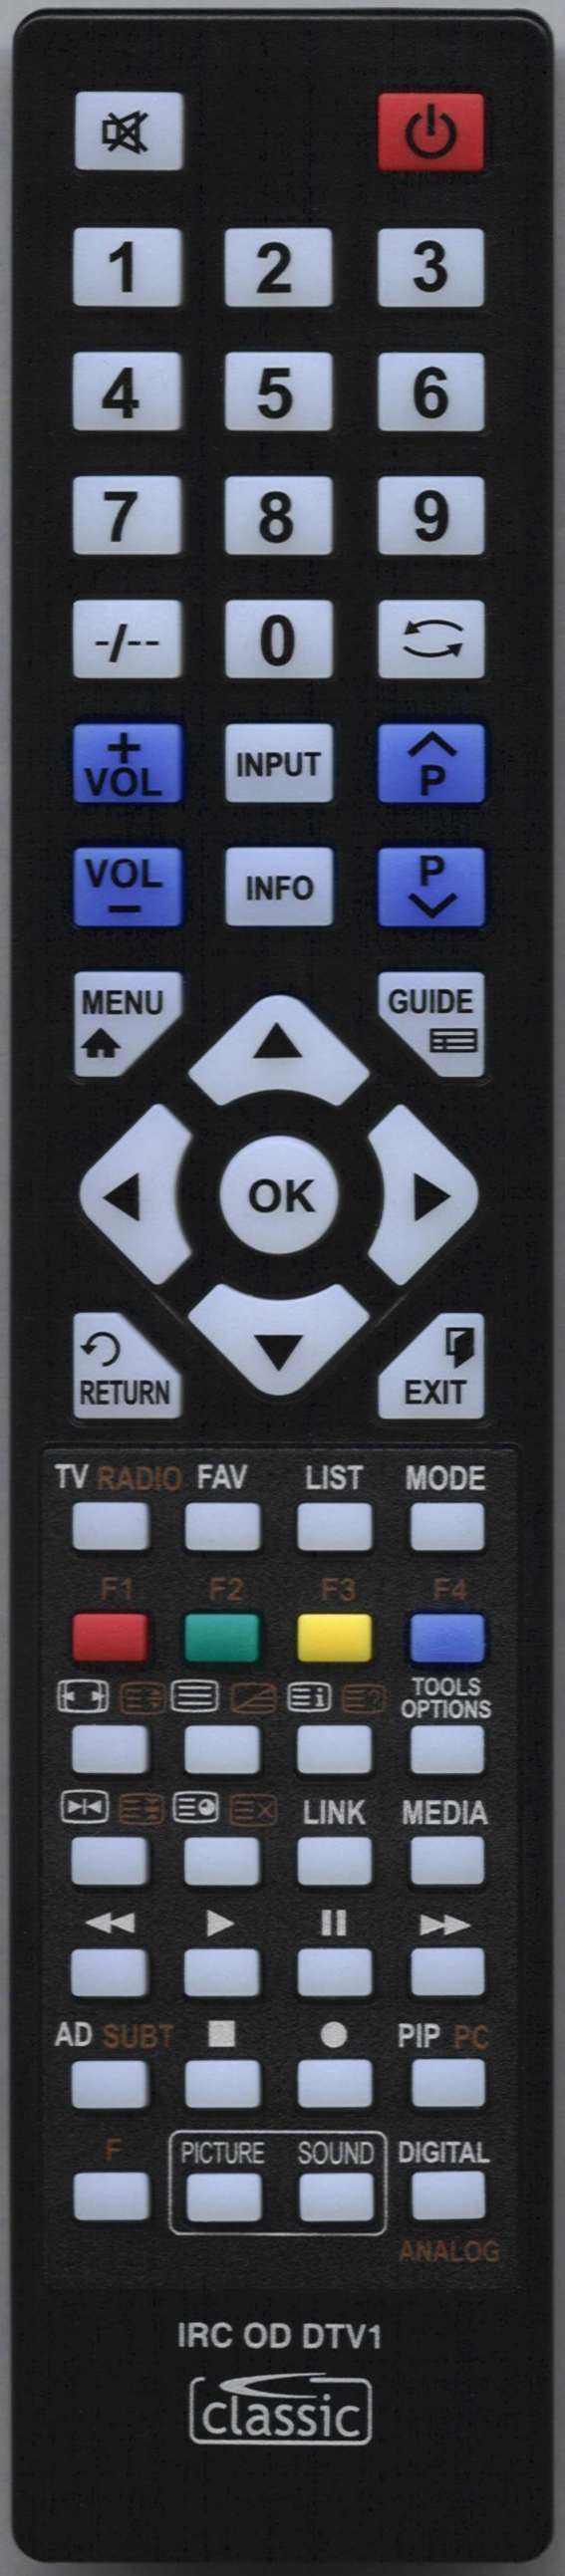 Orion TV32LB1000 Remote Control